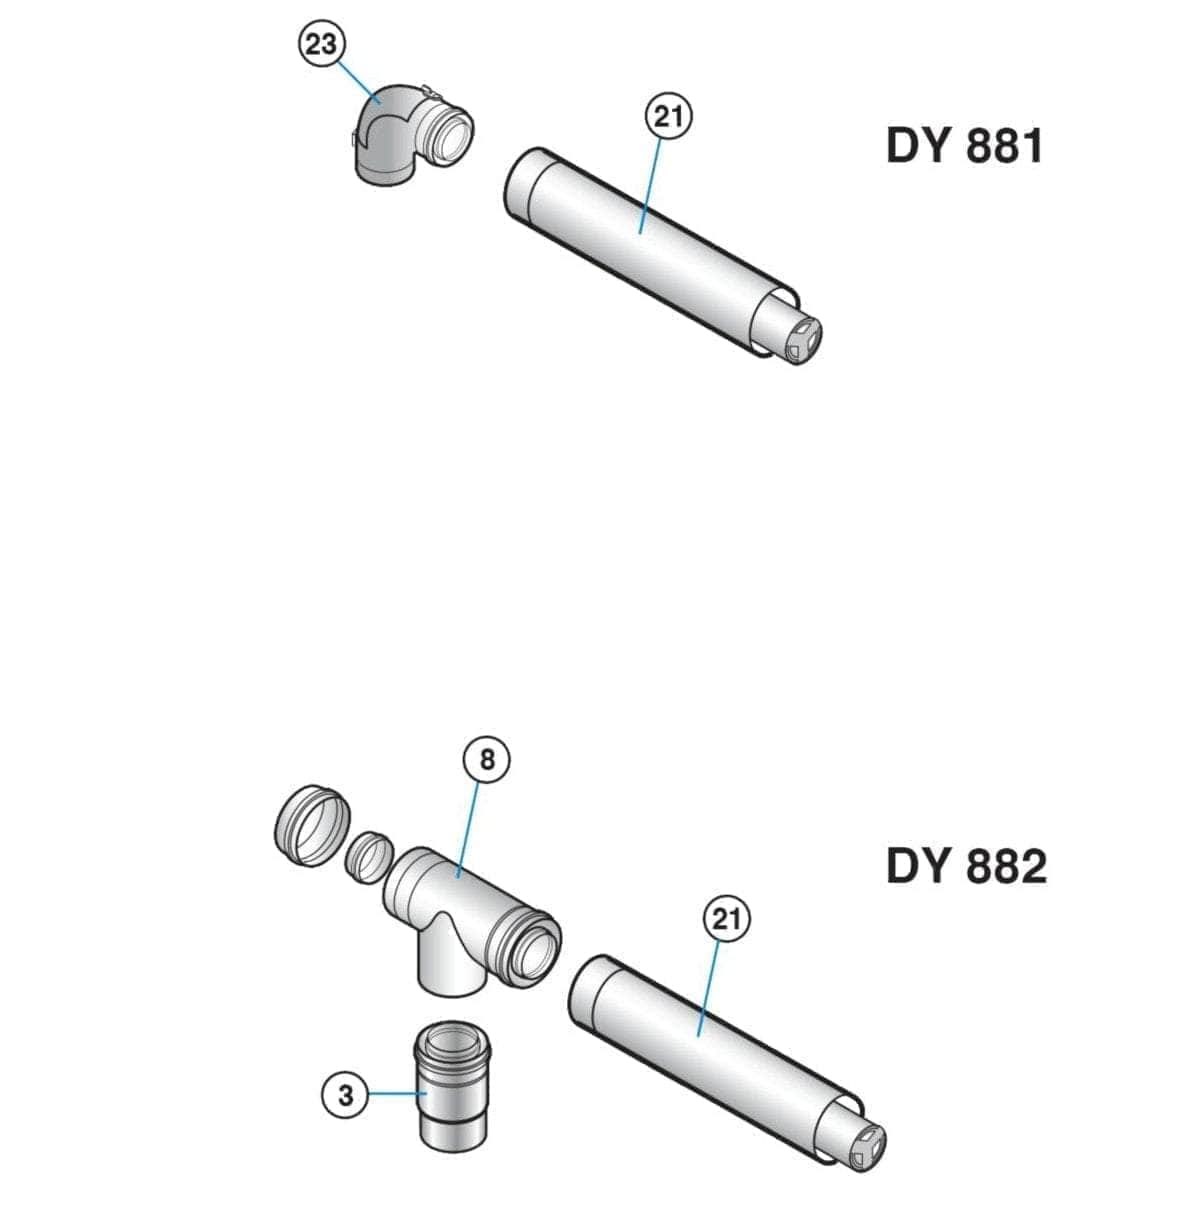 Divers sanitaires  -  Kit ventouse horizontal PPS 110 / 150 mm colis DY881 réf. 100011364